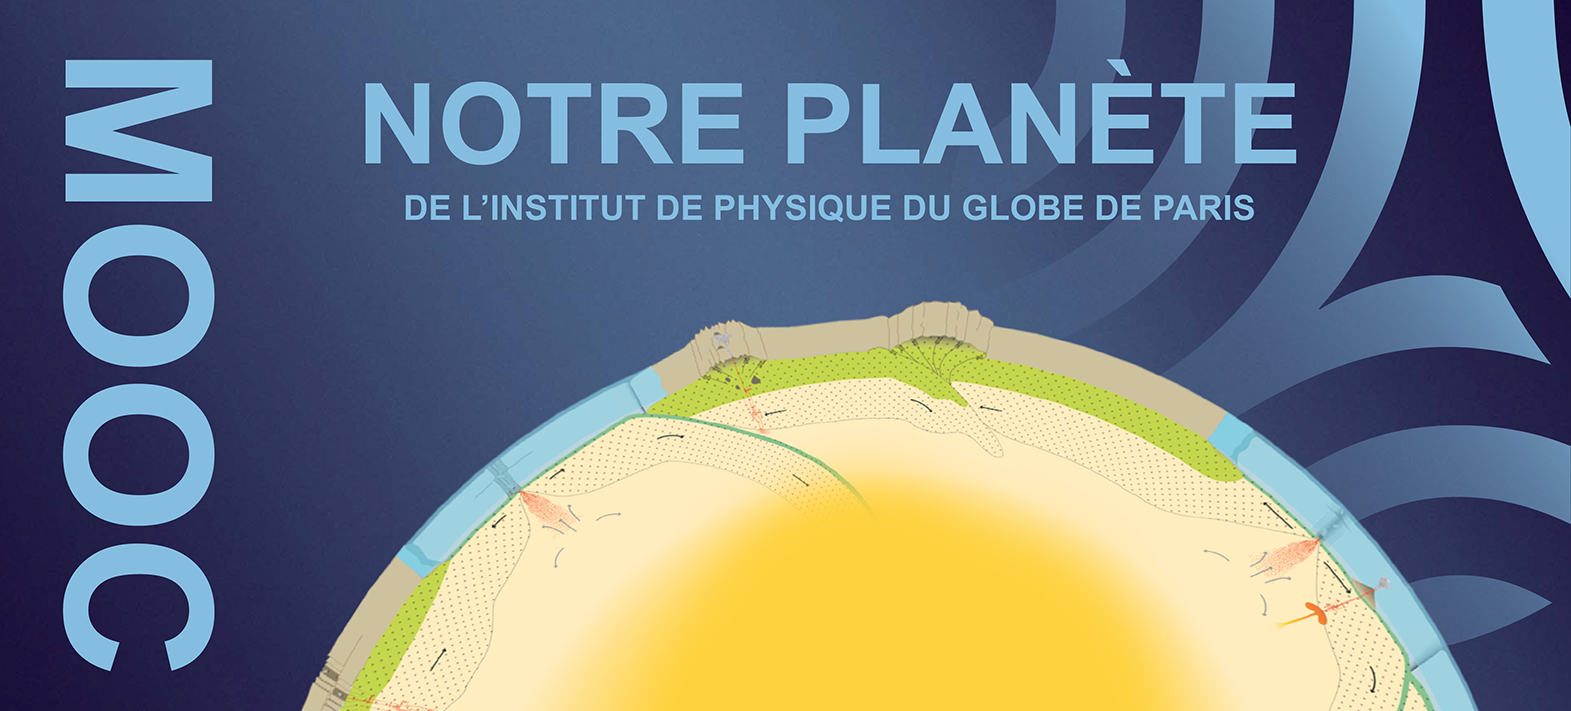 Nouvelle session du MOOC Notre Planète !